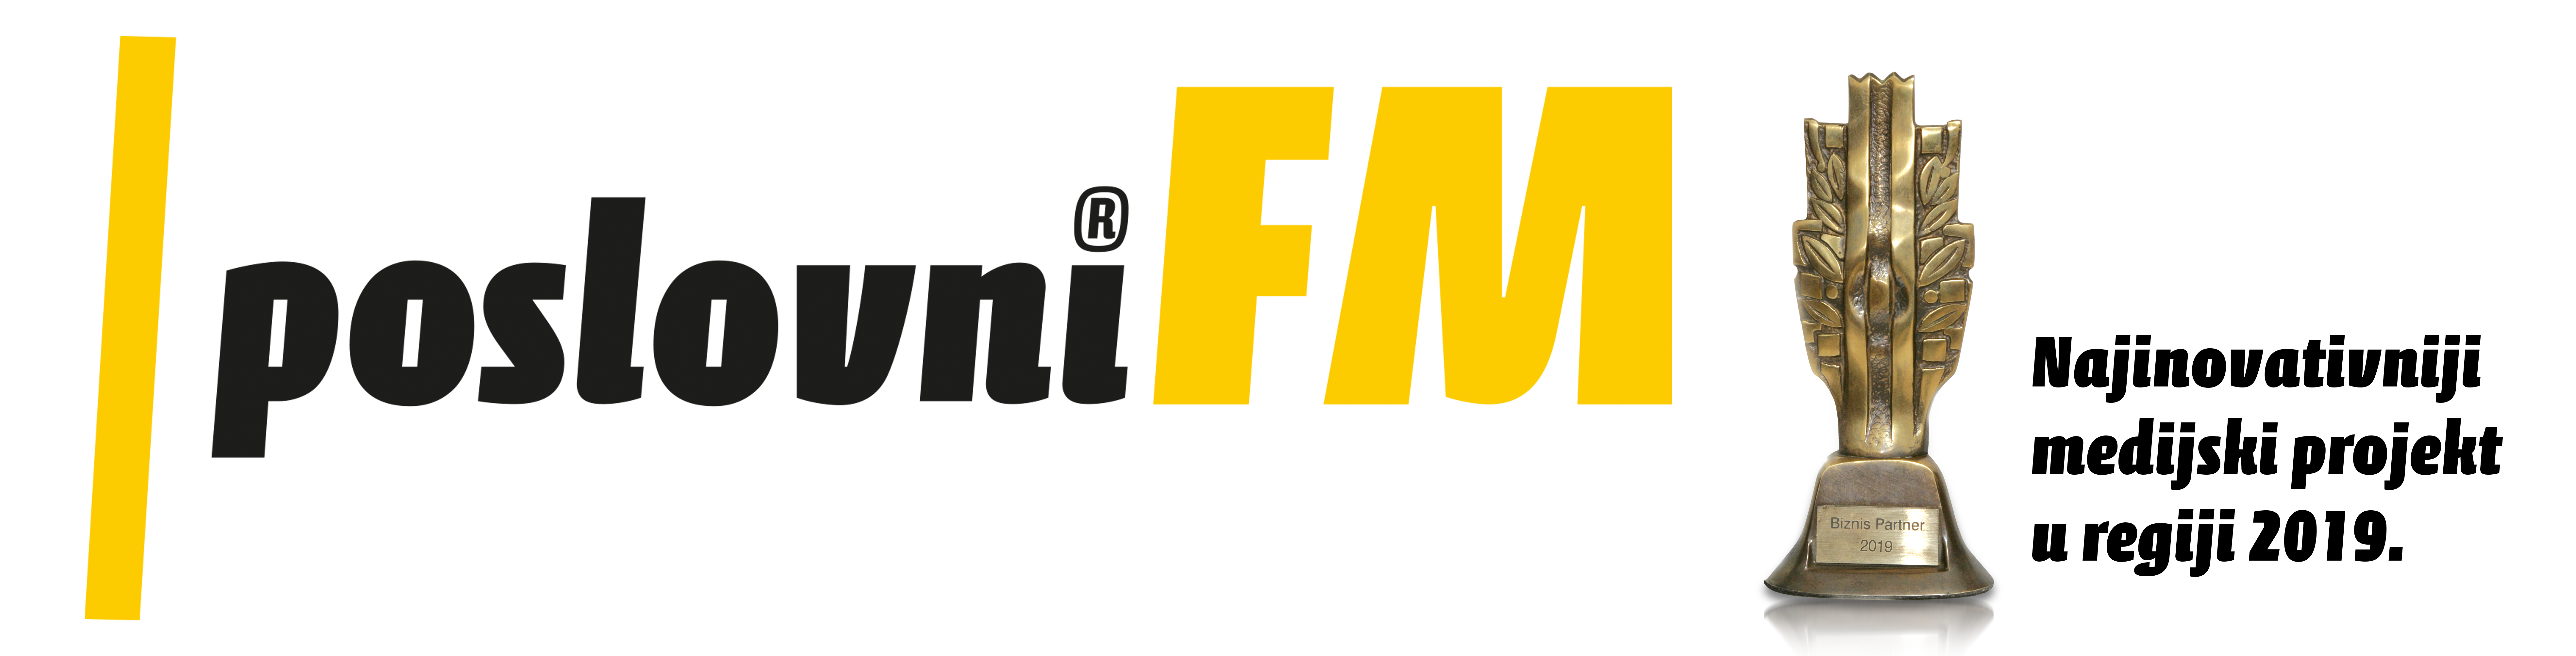 poslovniFM